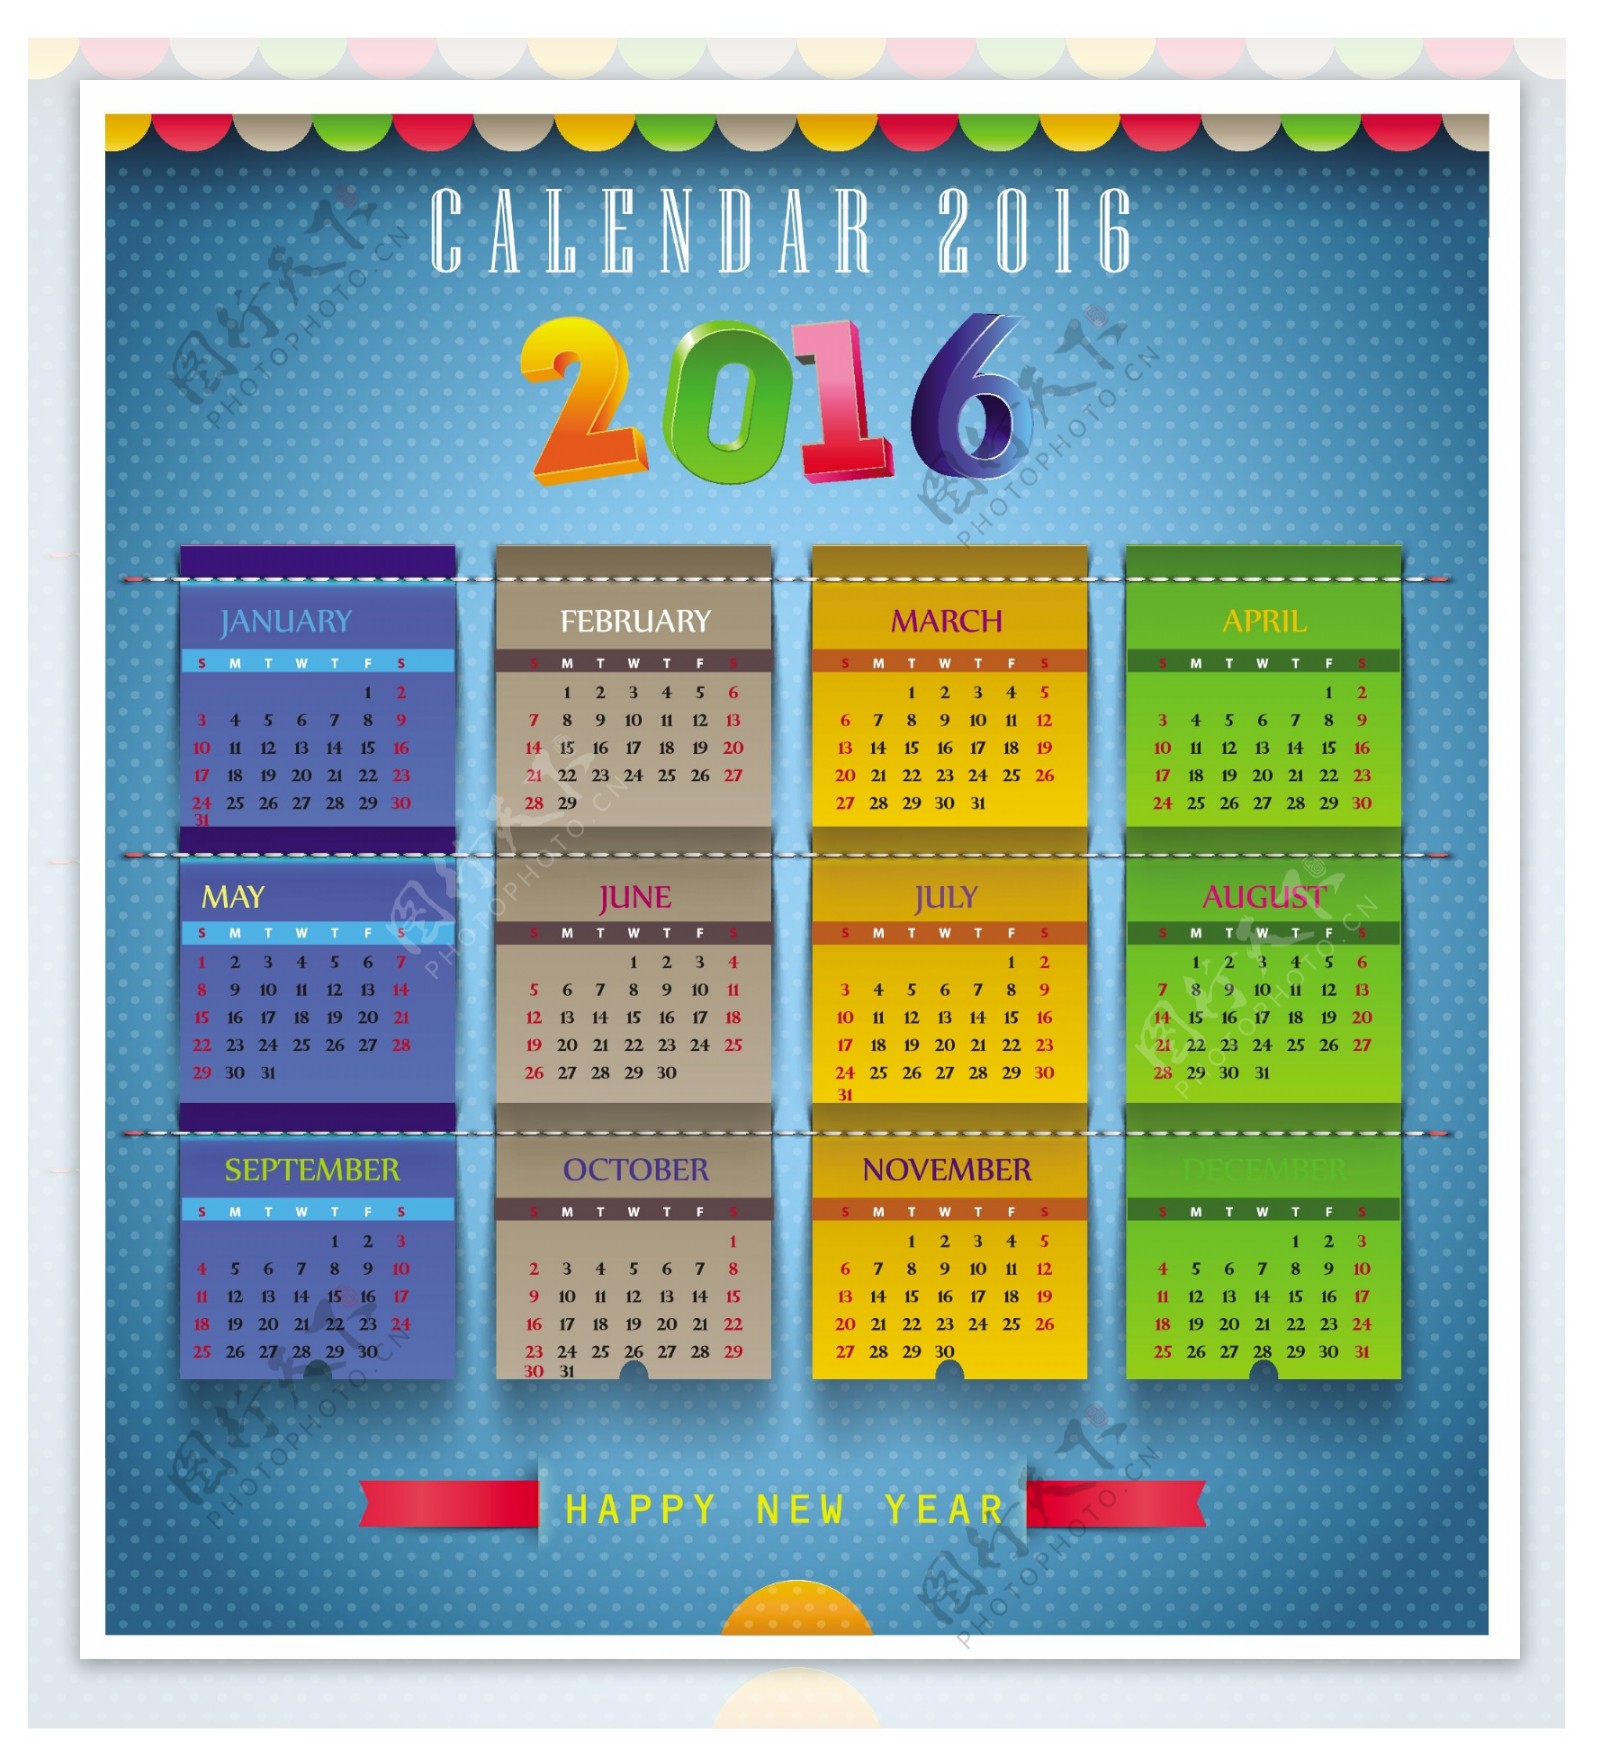 多彩的2016年日历模板